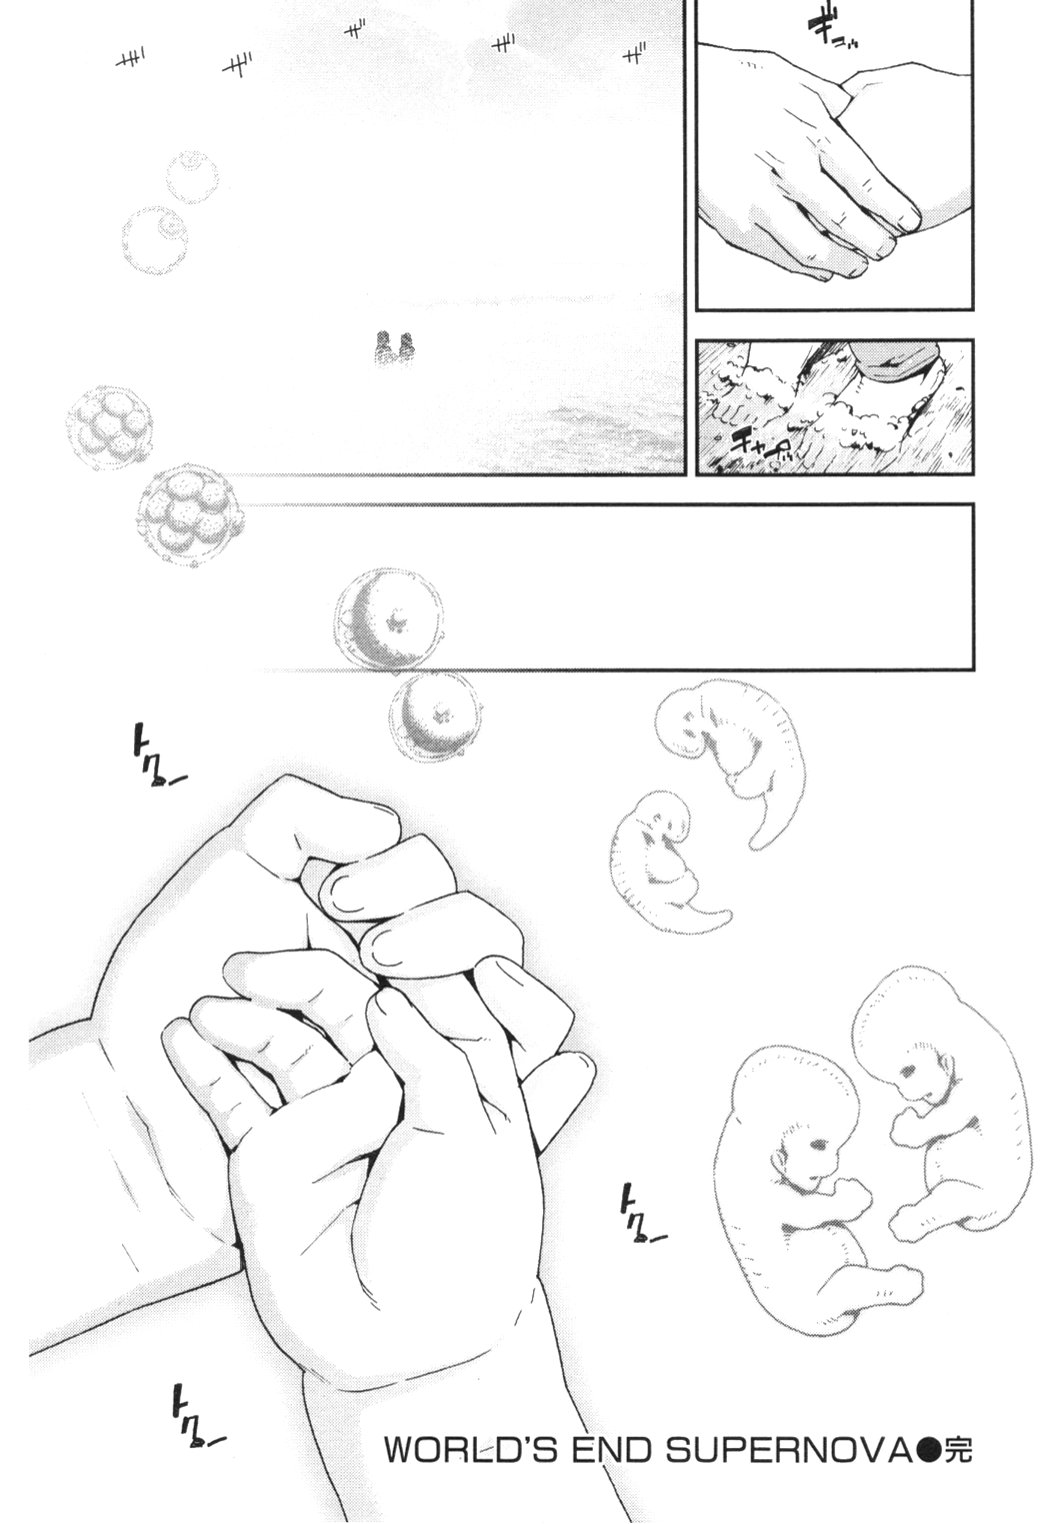 [2006.11.15]Comic Kairakuten Beast Volume 13 